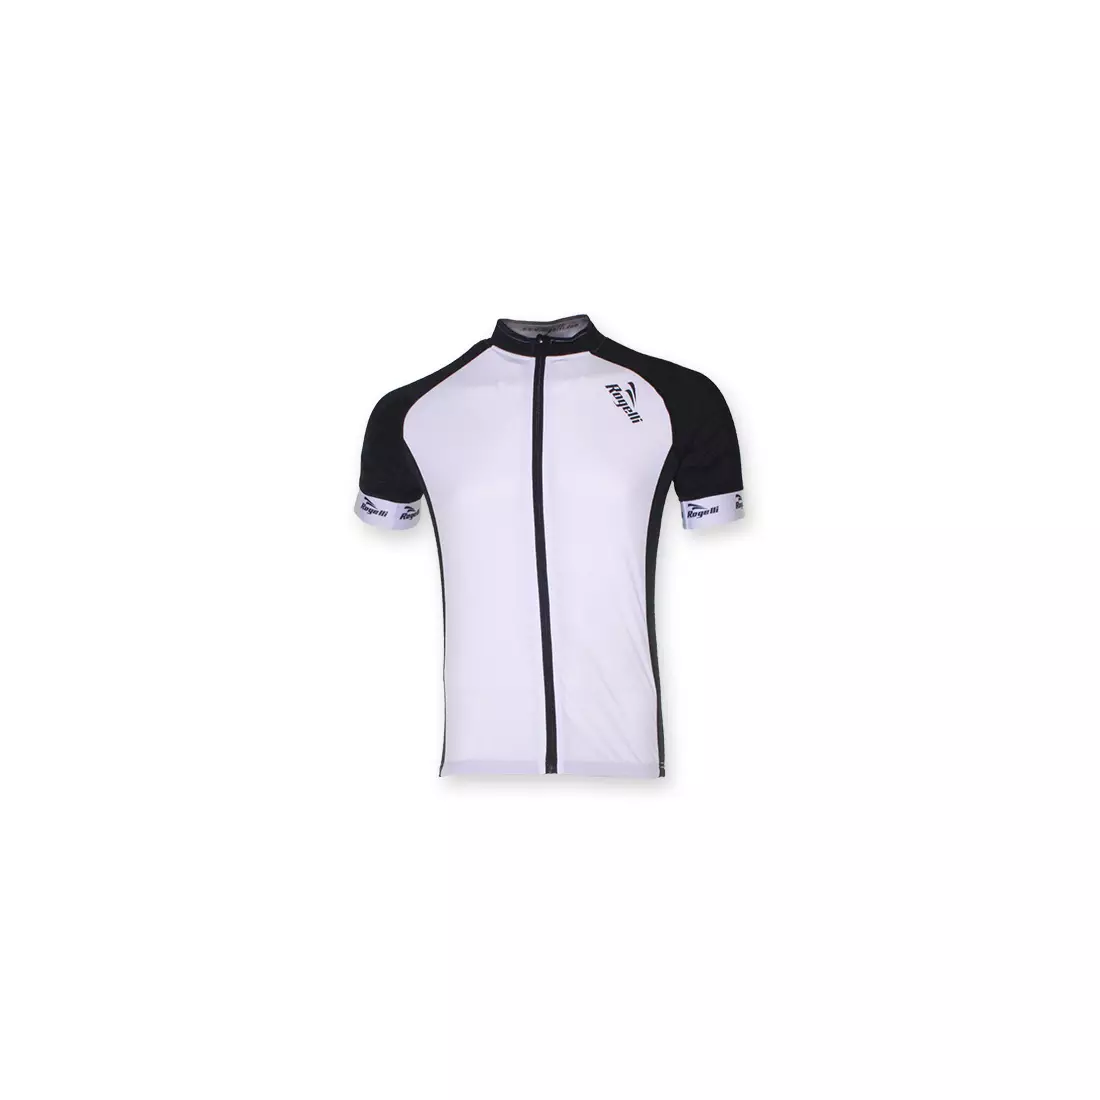 ROGELLI PRALI - tricou de ciclism barbatesc, culoare: alb si negru